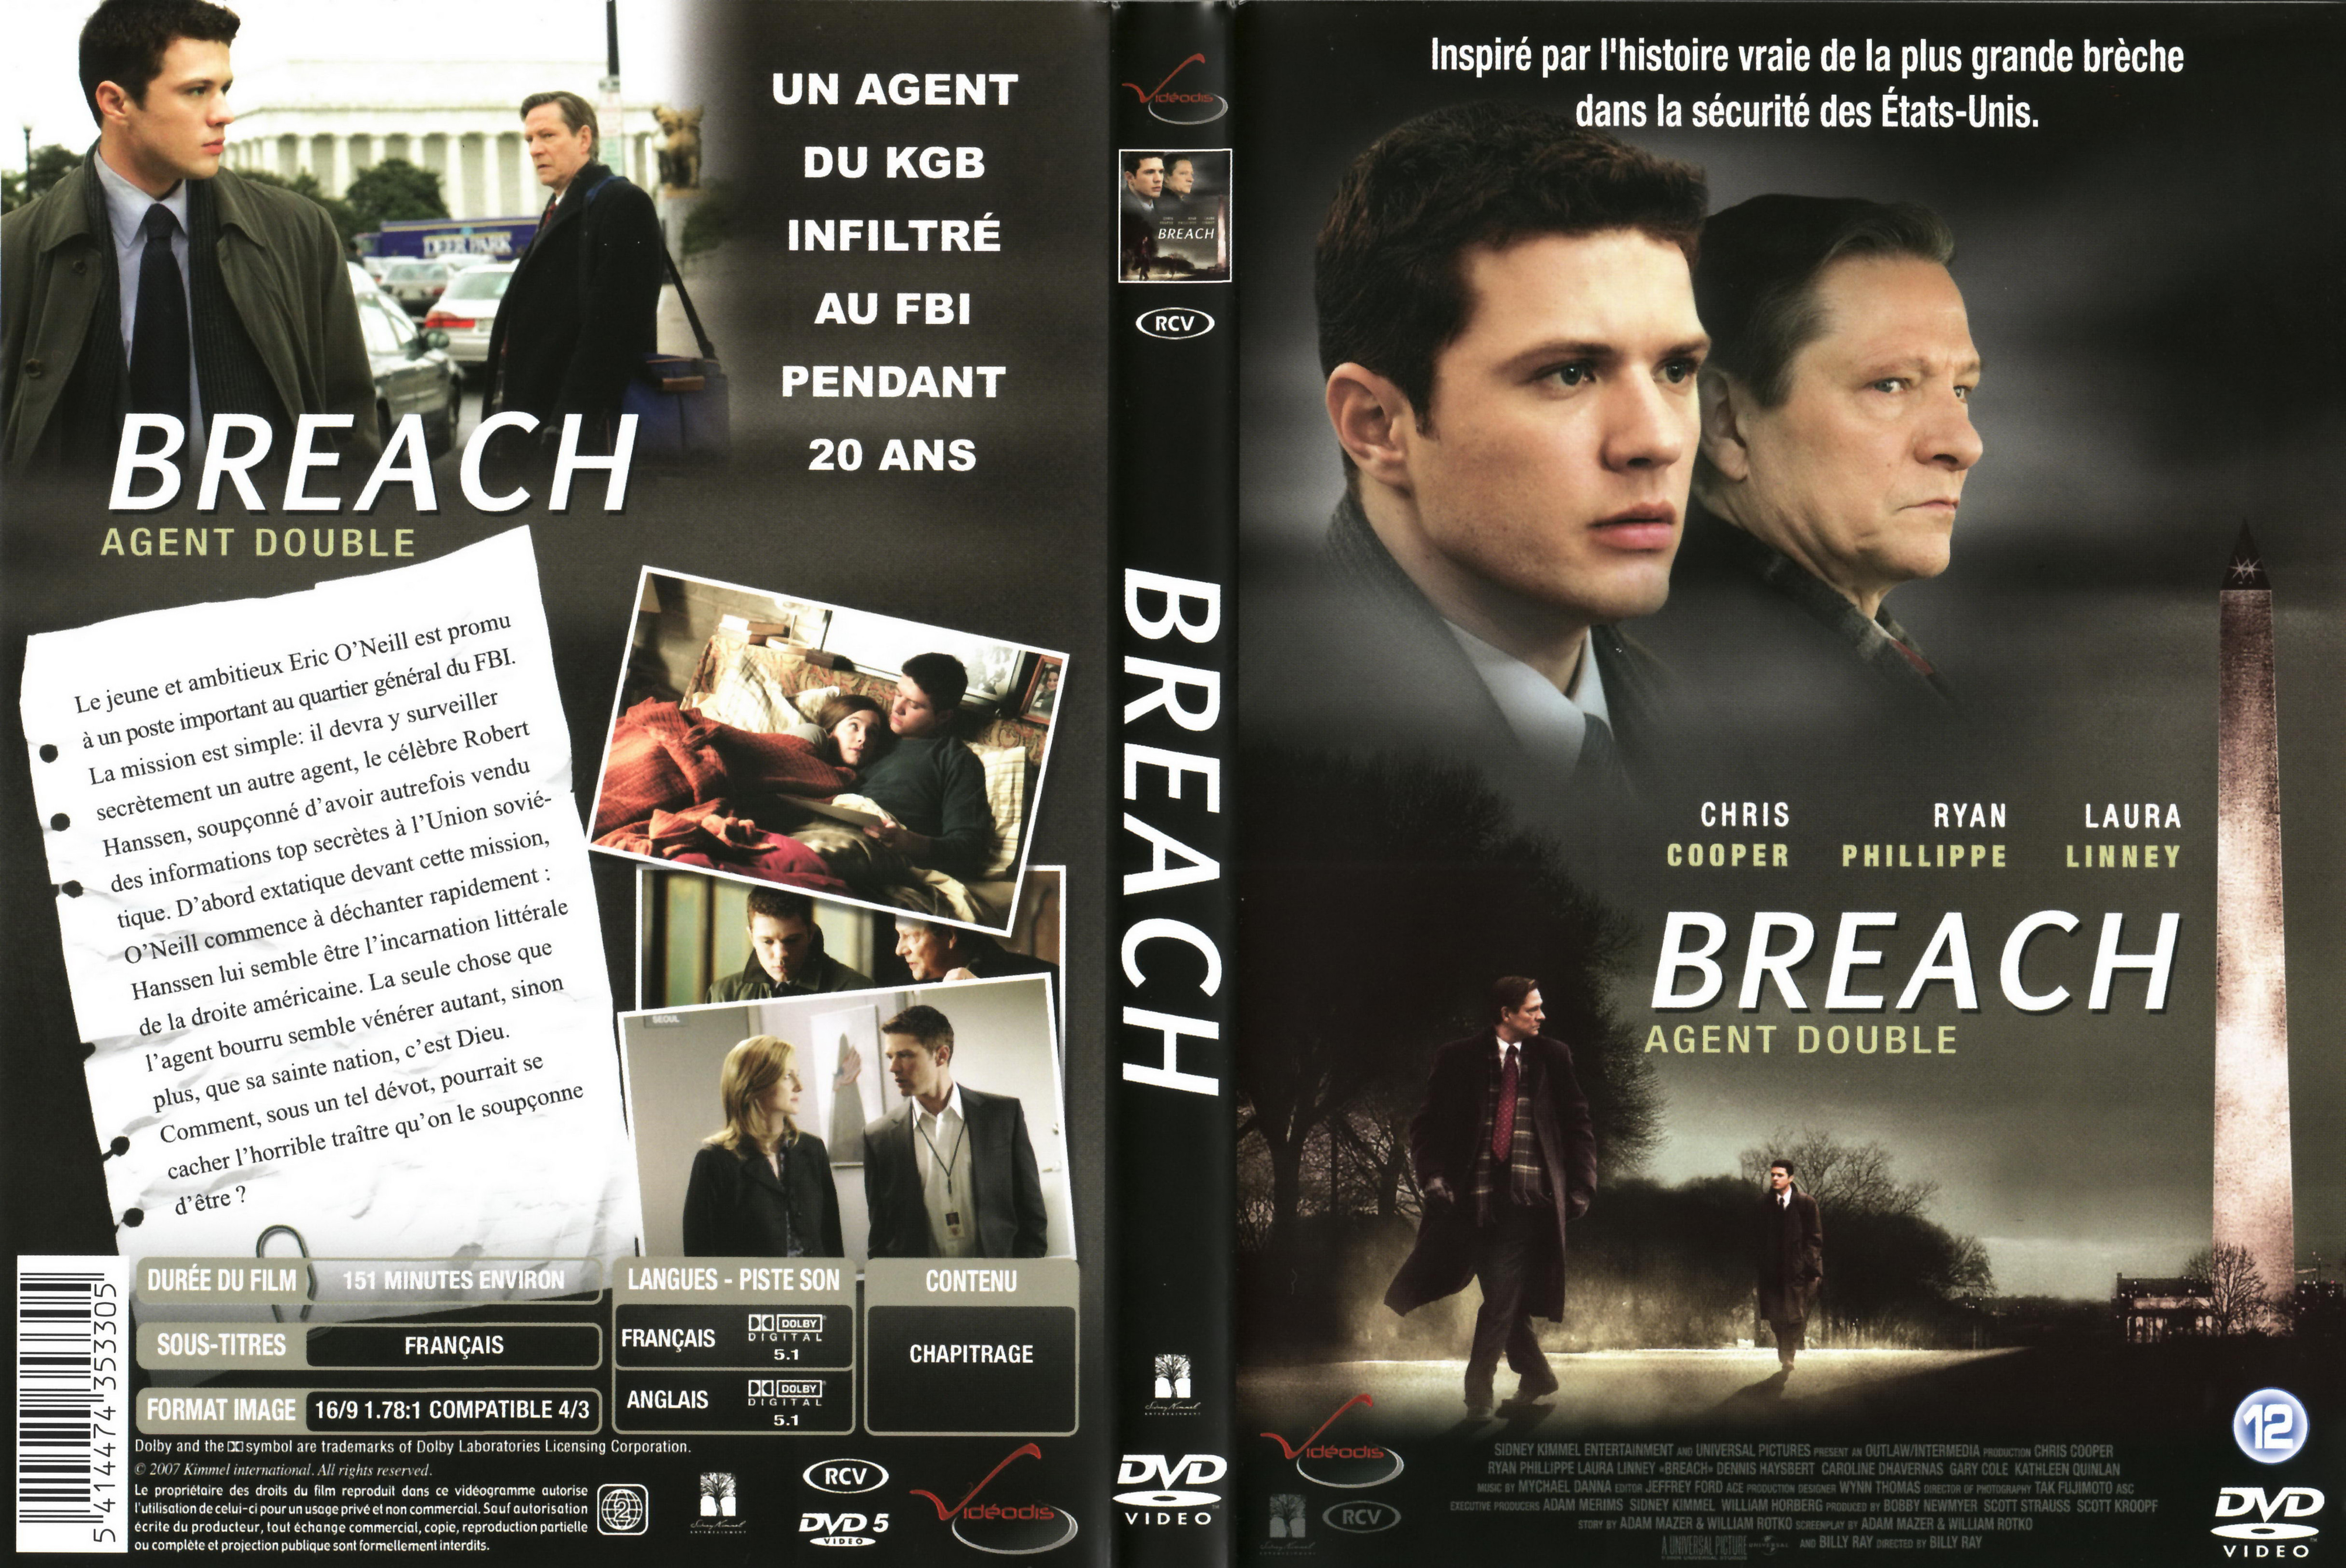 Jaquette DVD Breach - Agent double